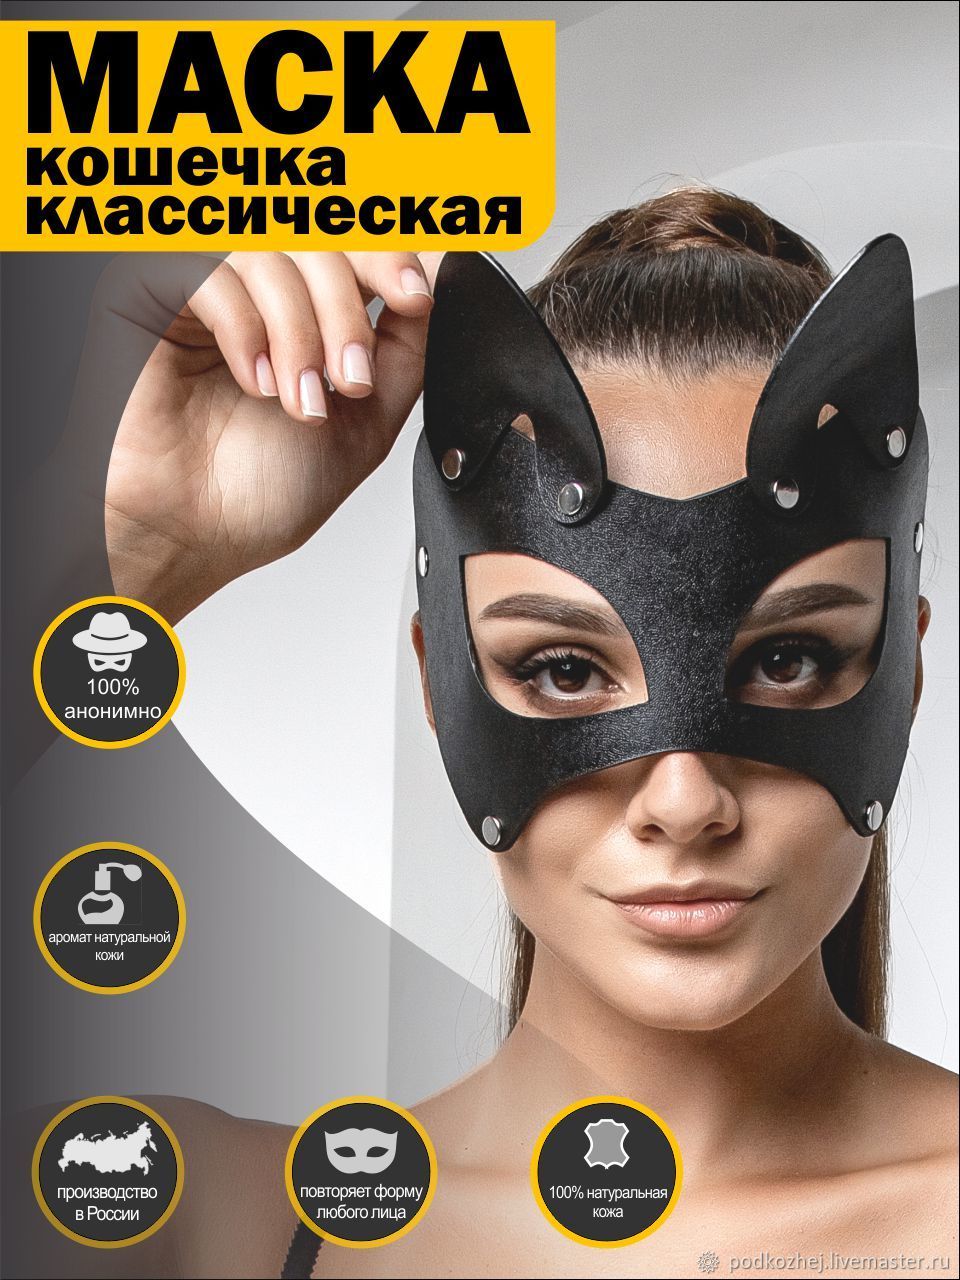 Сексуальная маска Изображения – скачать бесплатно на Freepik